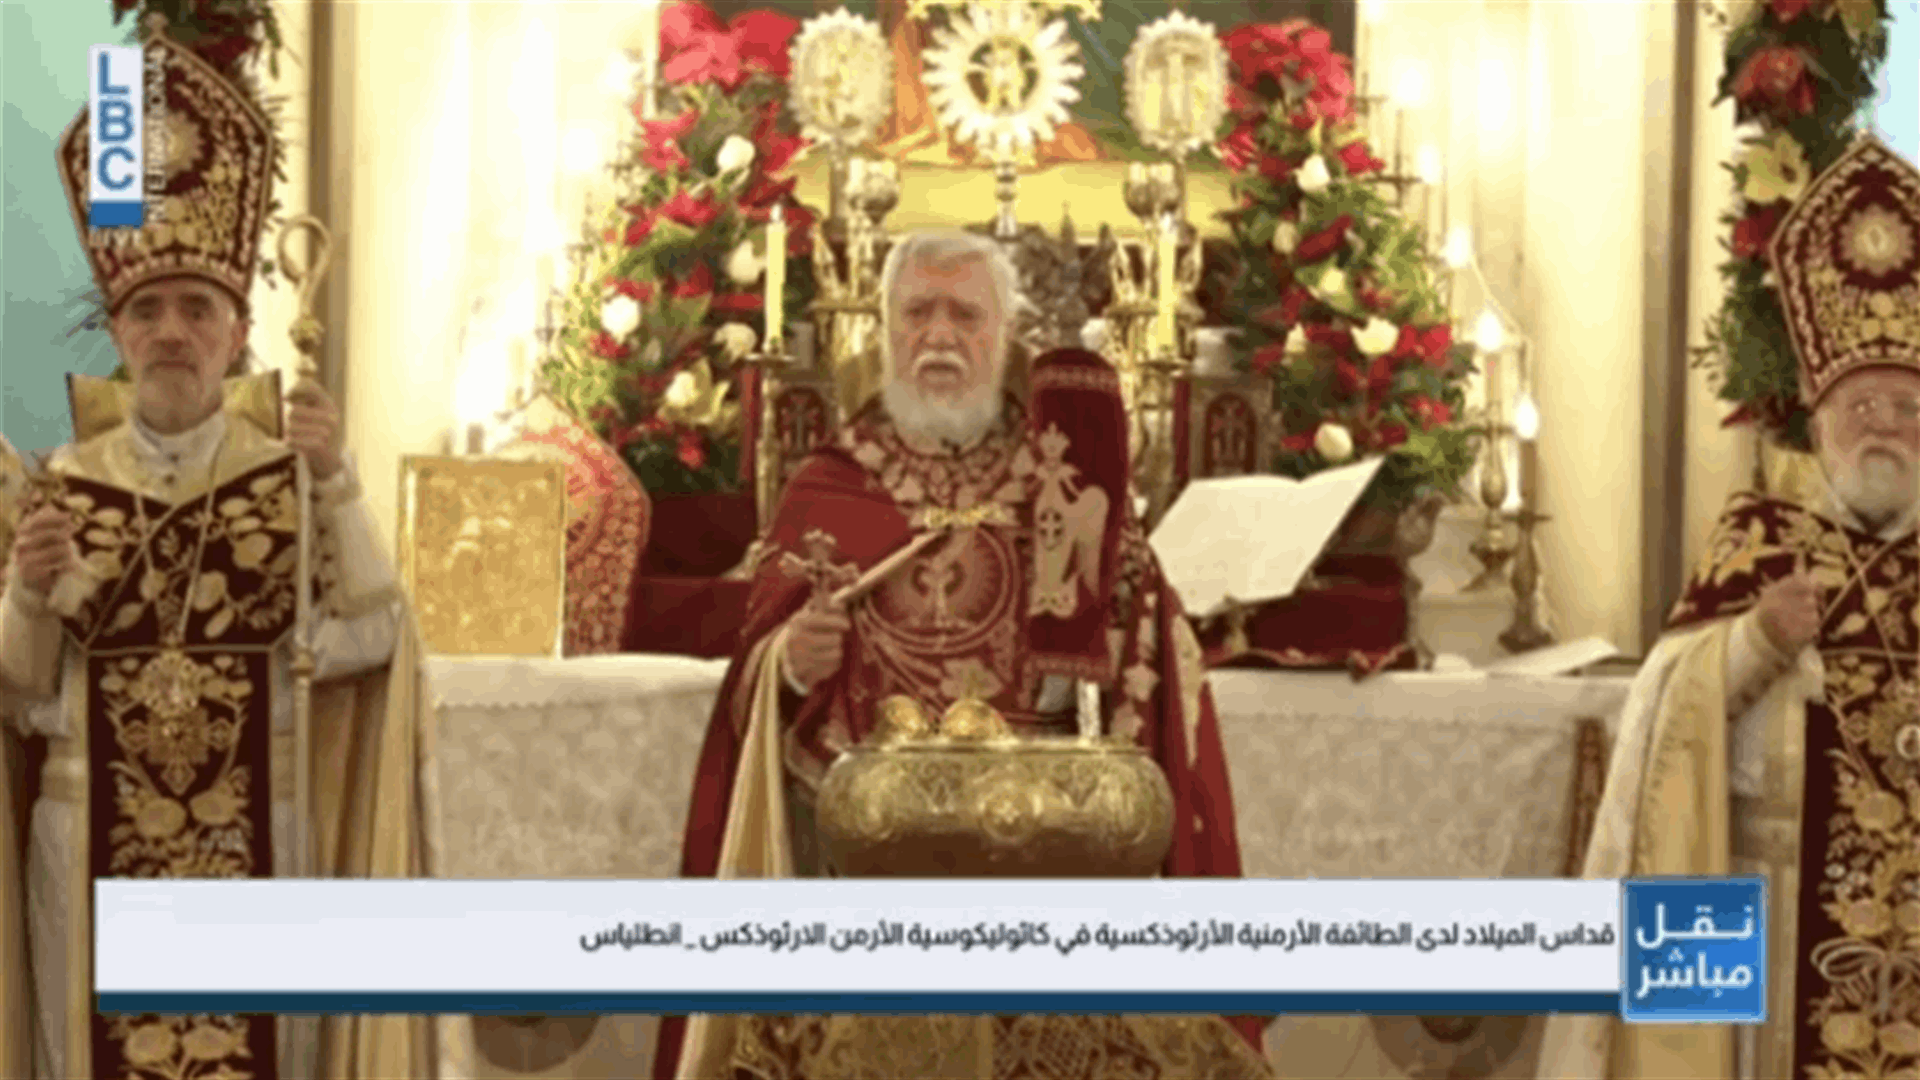 الكاثوليكوس آرام الأول يترأس الذبيحة الإلهية بمناسبة الميلاد: لاخراج لبنان من محنه بأسرع وقت